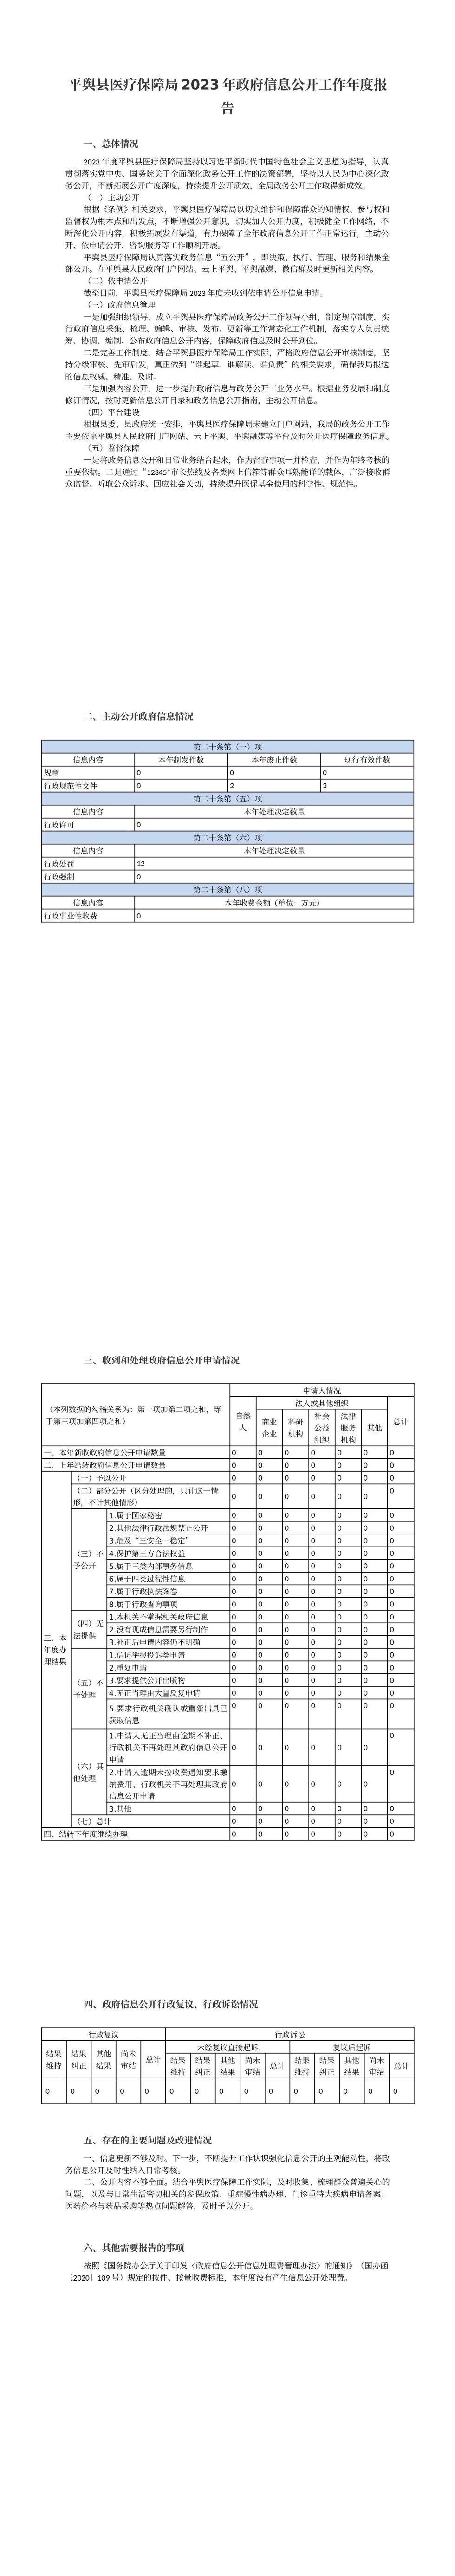 平舆县医疗保障局2023年政府信息公开工作年度报告_00.jpg